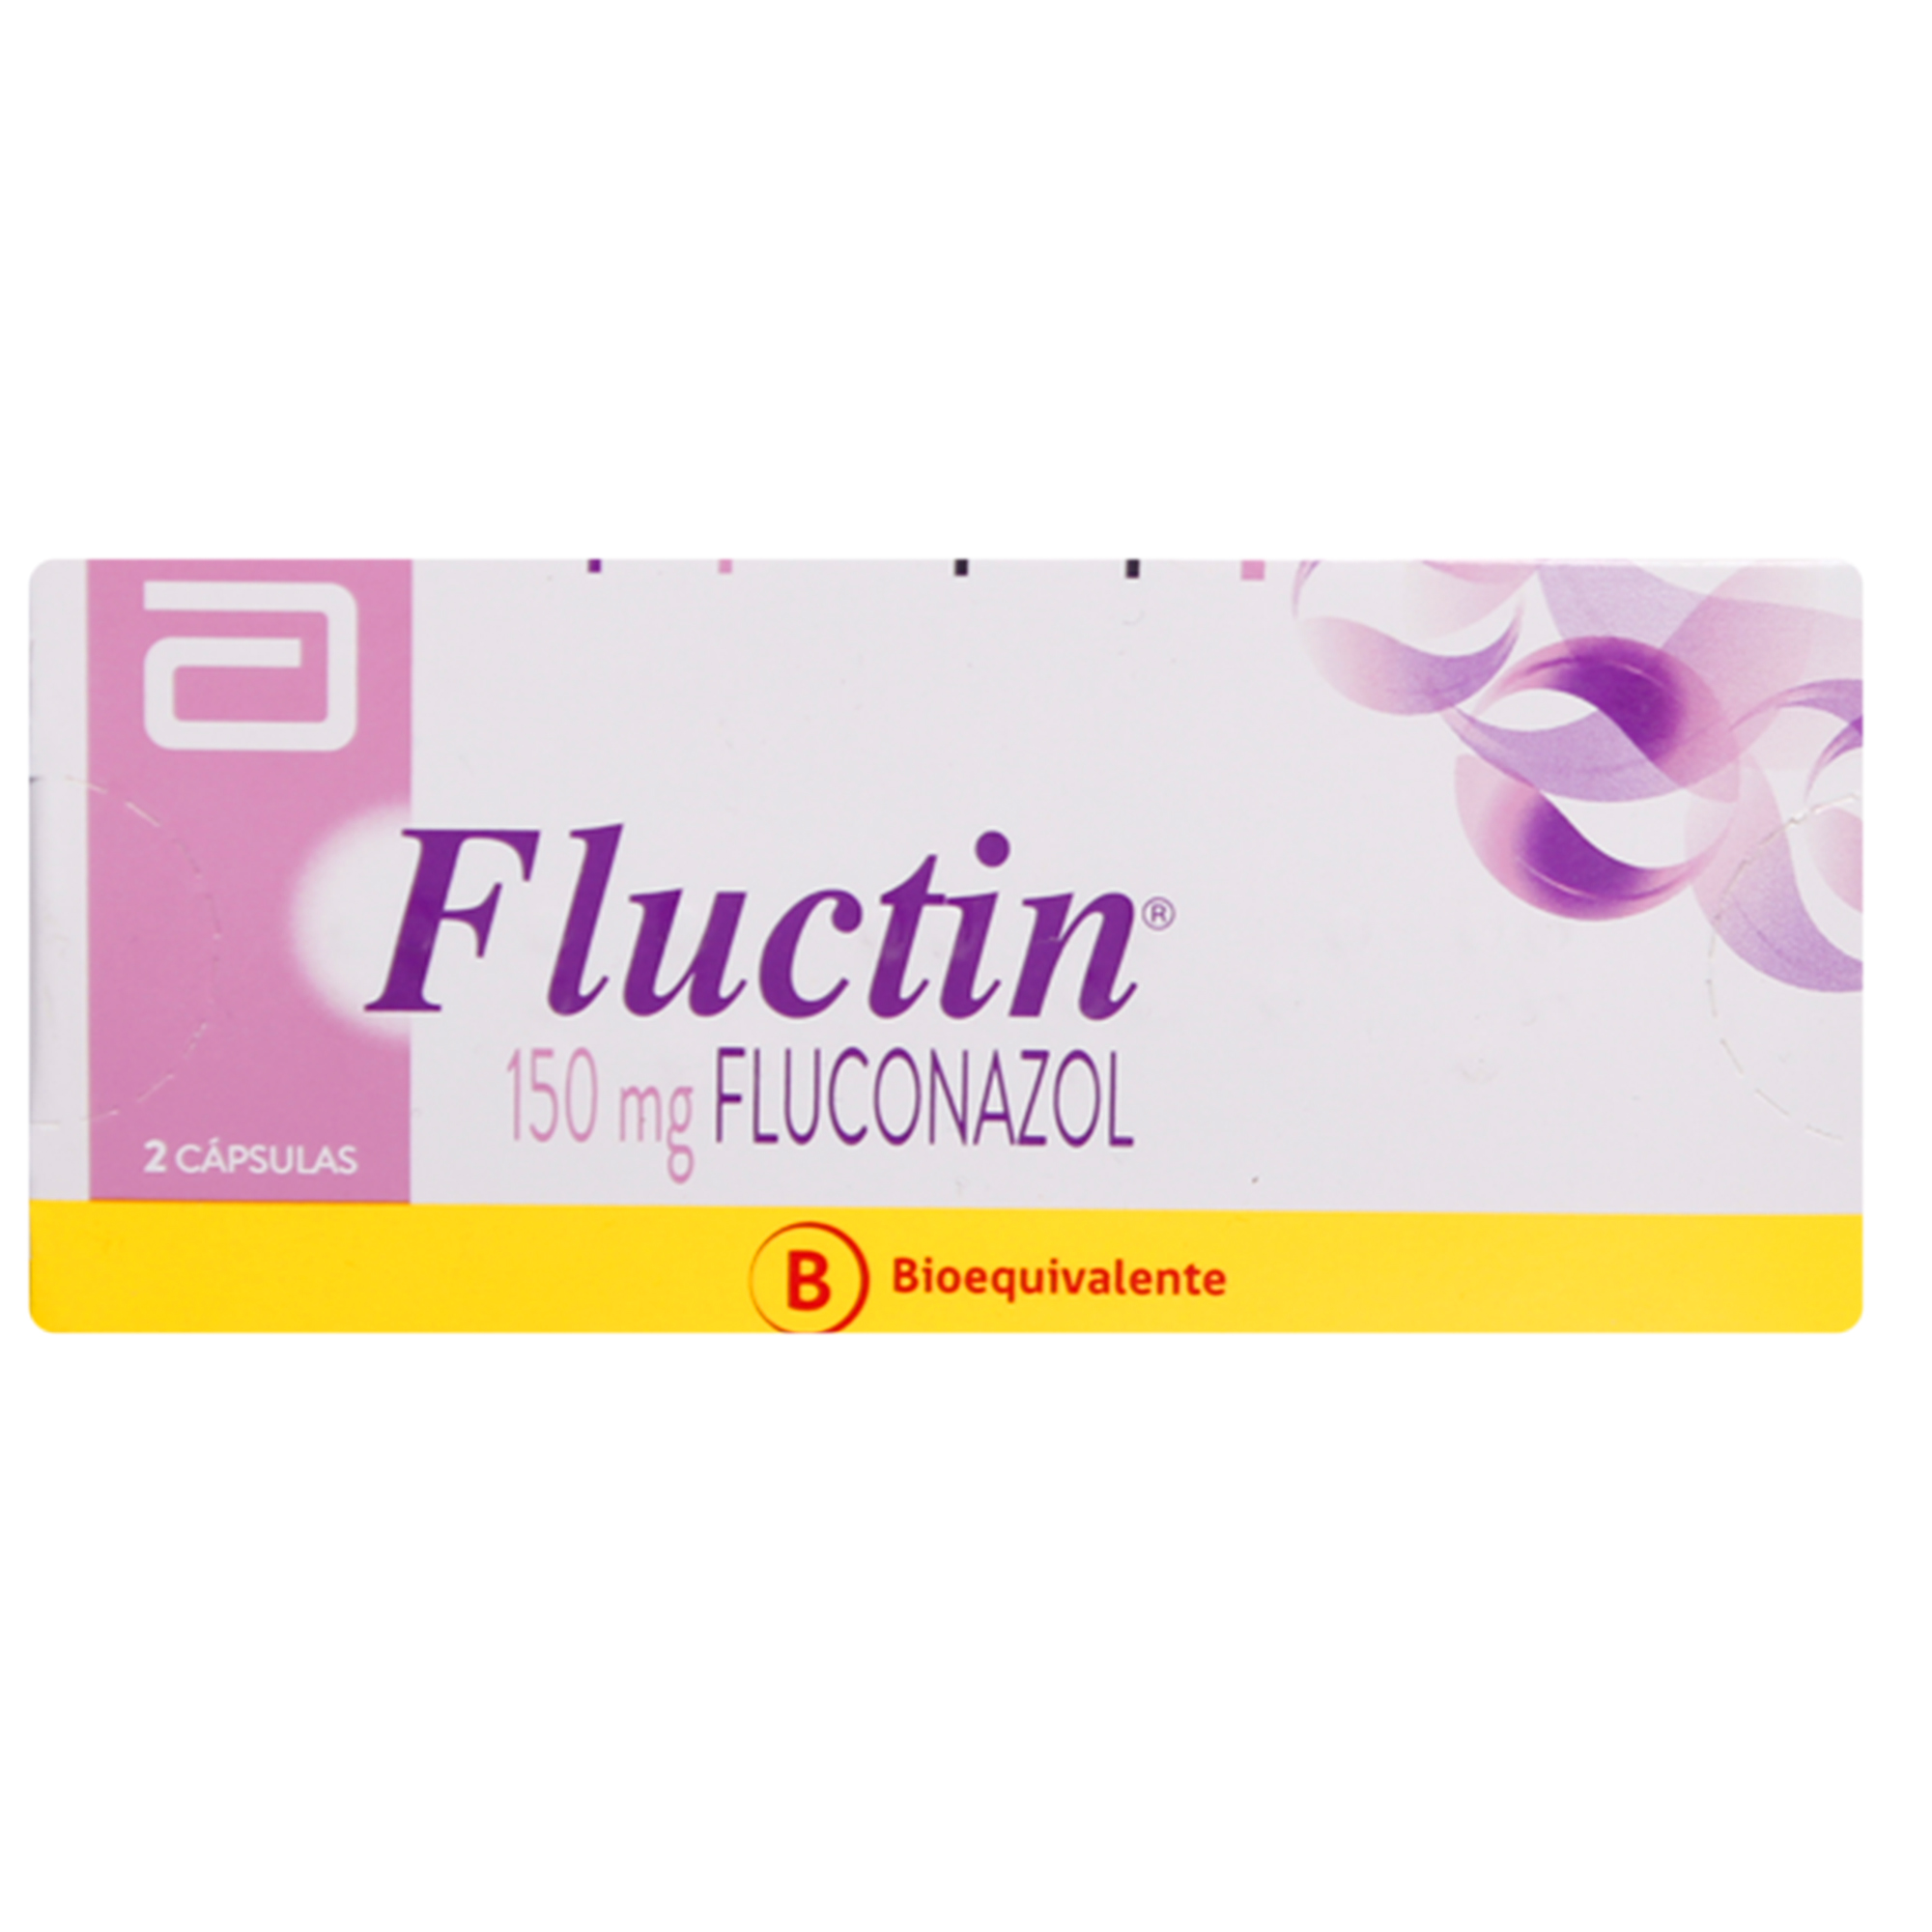 Fluctin Fluconazol 150 mg 2 Cápsulas | Farmacias Cruz Verde